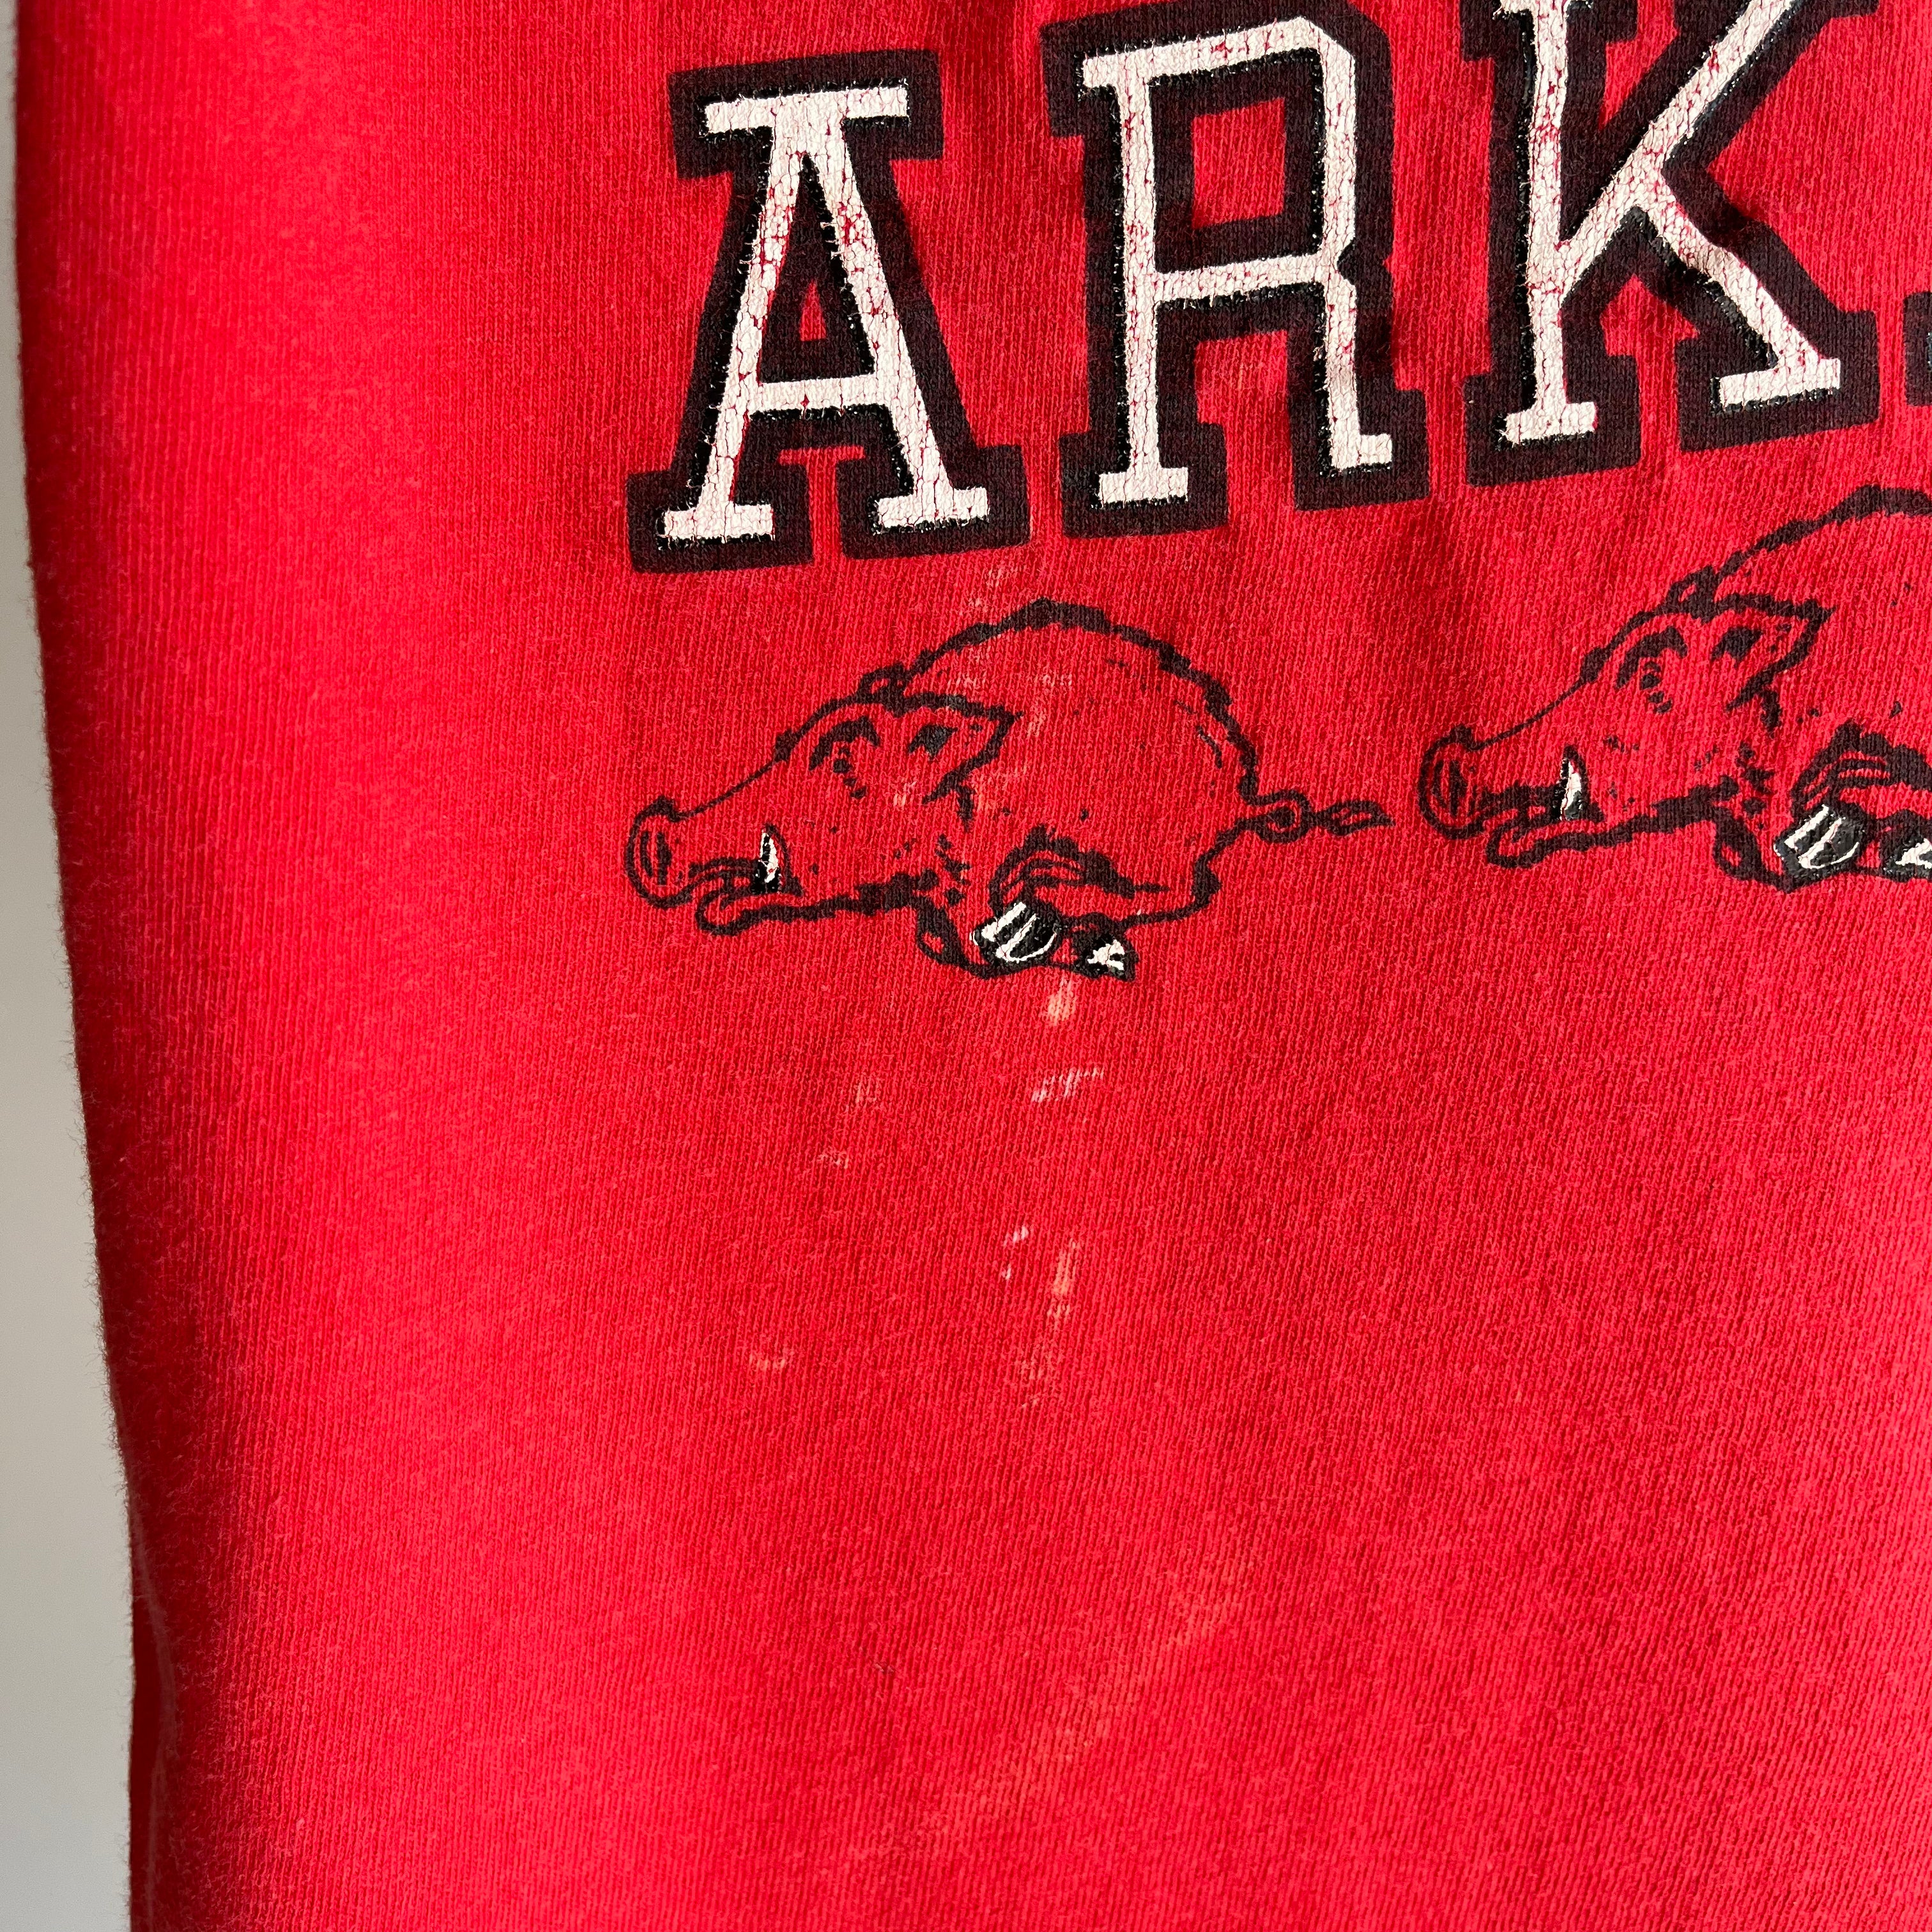 T-shirt en coton Razorbacks de l'Arkansas des années 1980